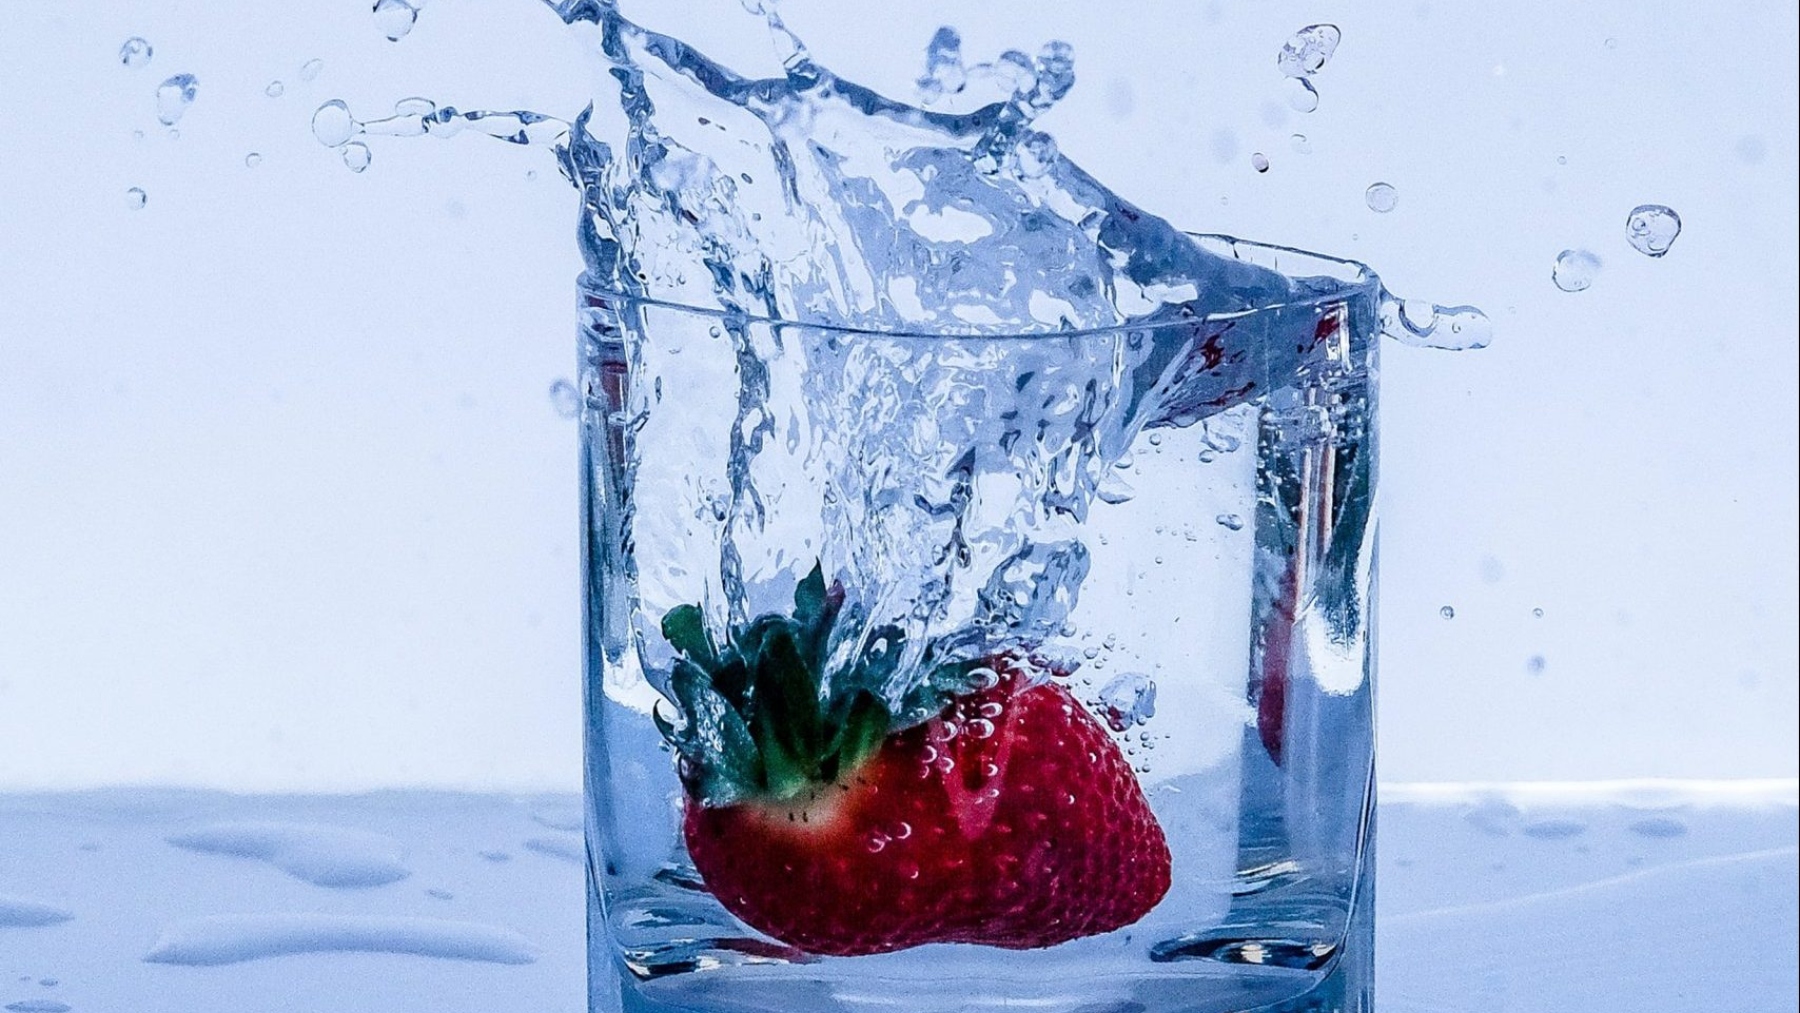 Vaso de agua con fresas